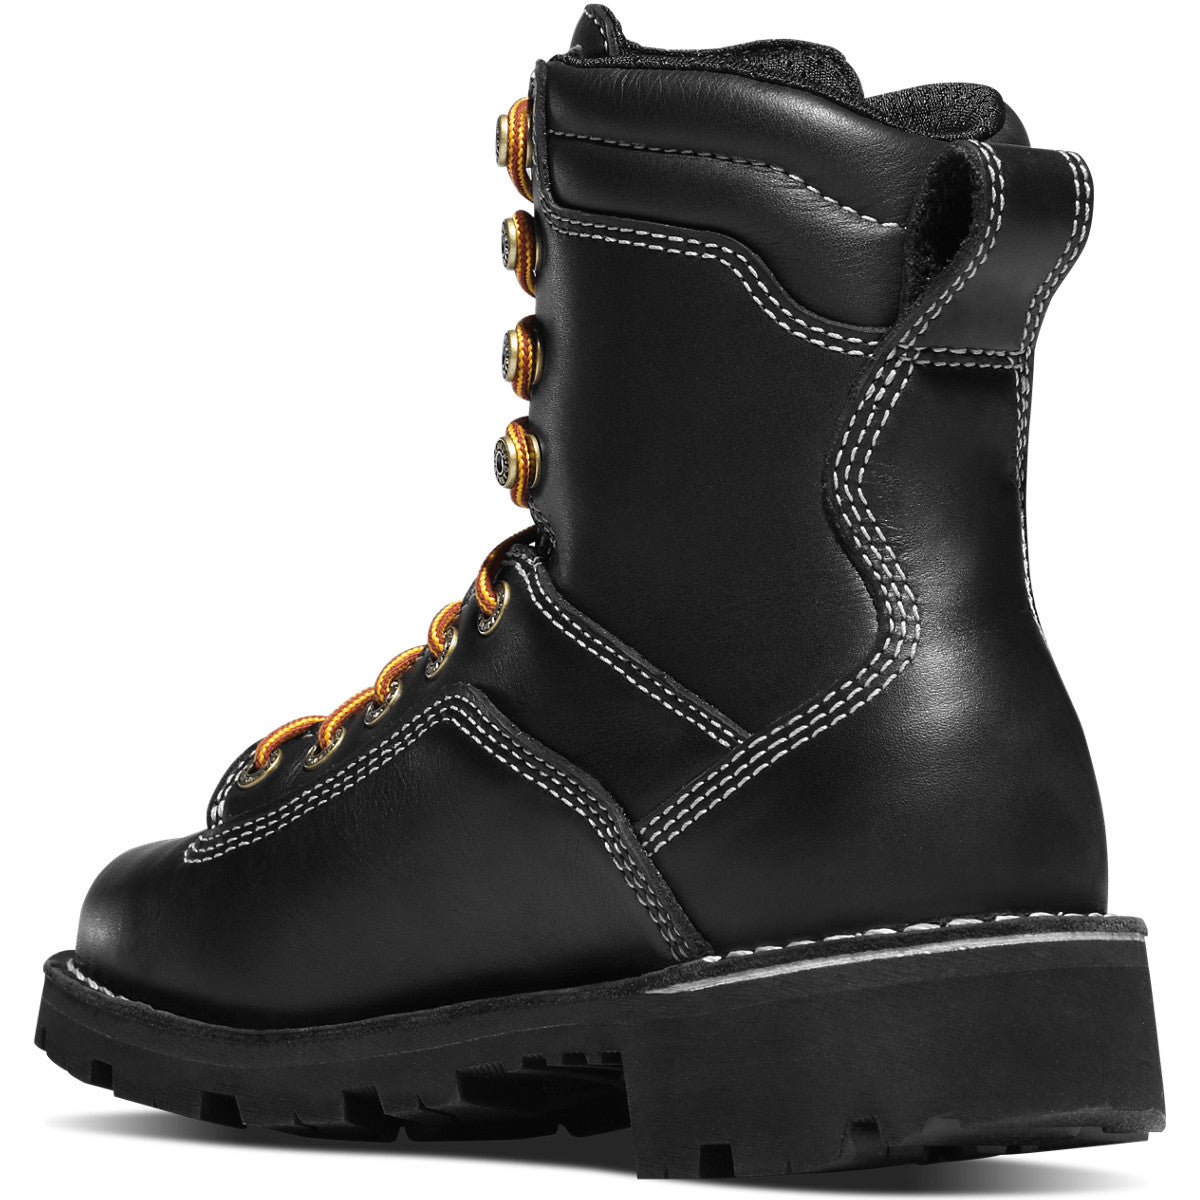 Danner Women's Quarry USA Made Waterproof Work Boot - Black - 17323  - Overlook Boots